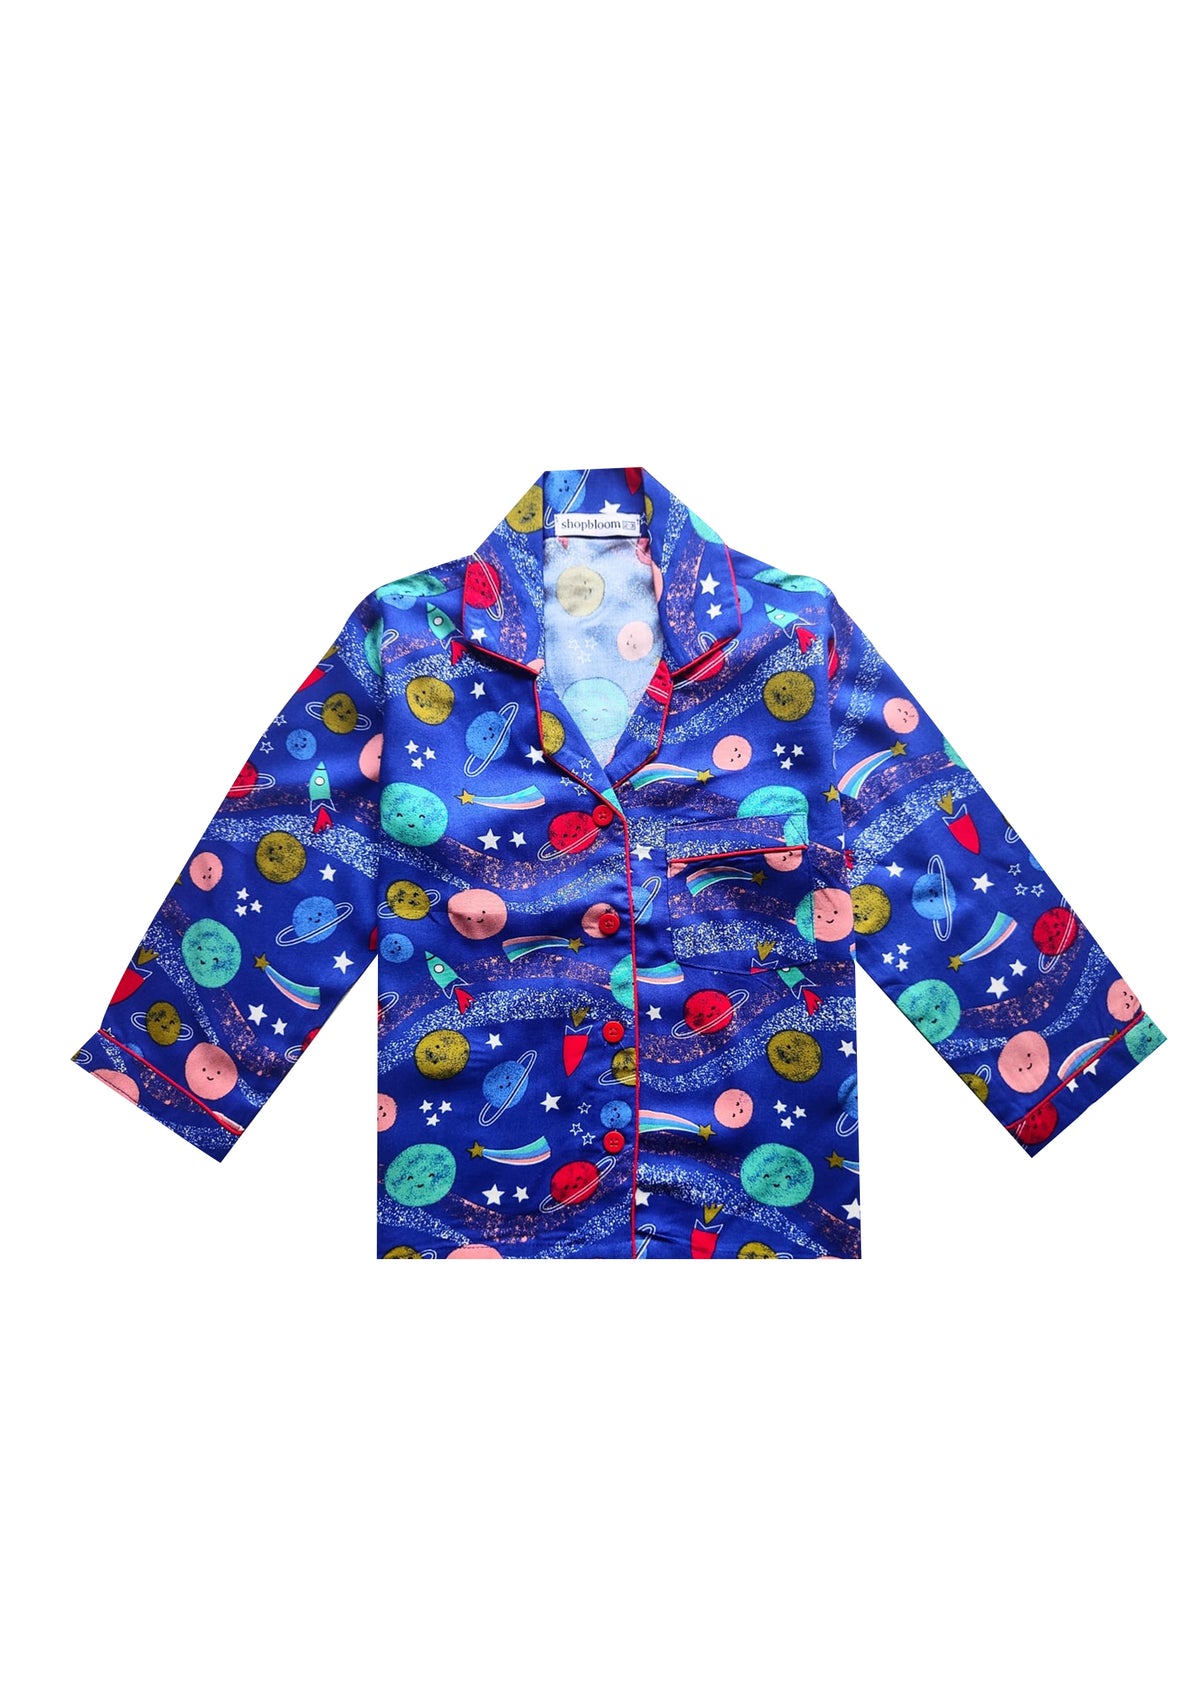 Blue Space Print Long Sleeve Kids Night Suit - Shopbloom